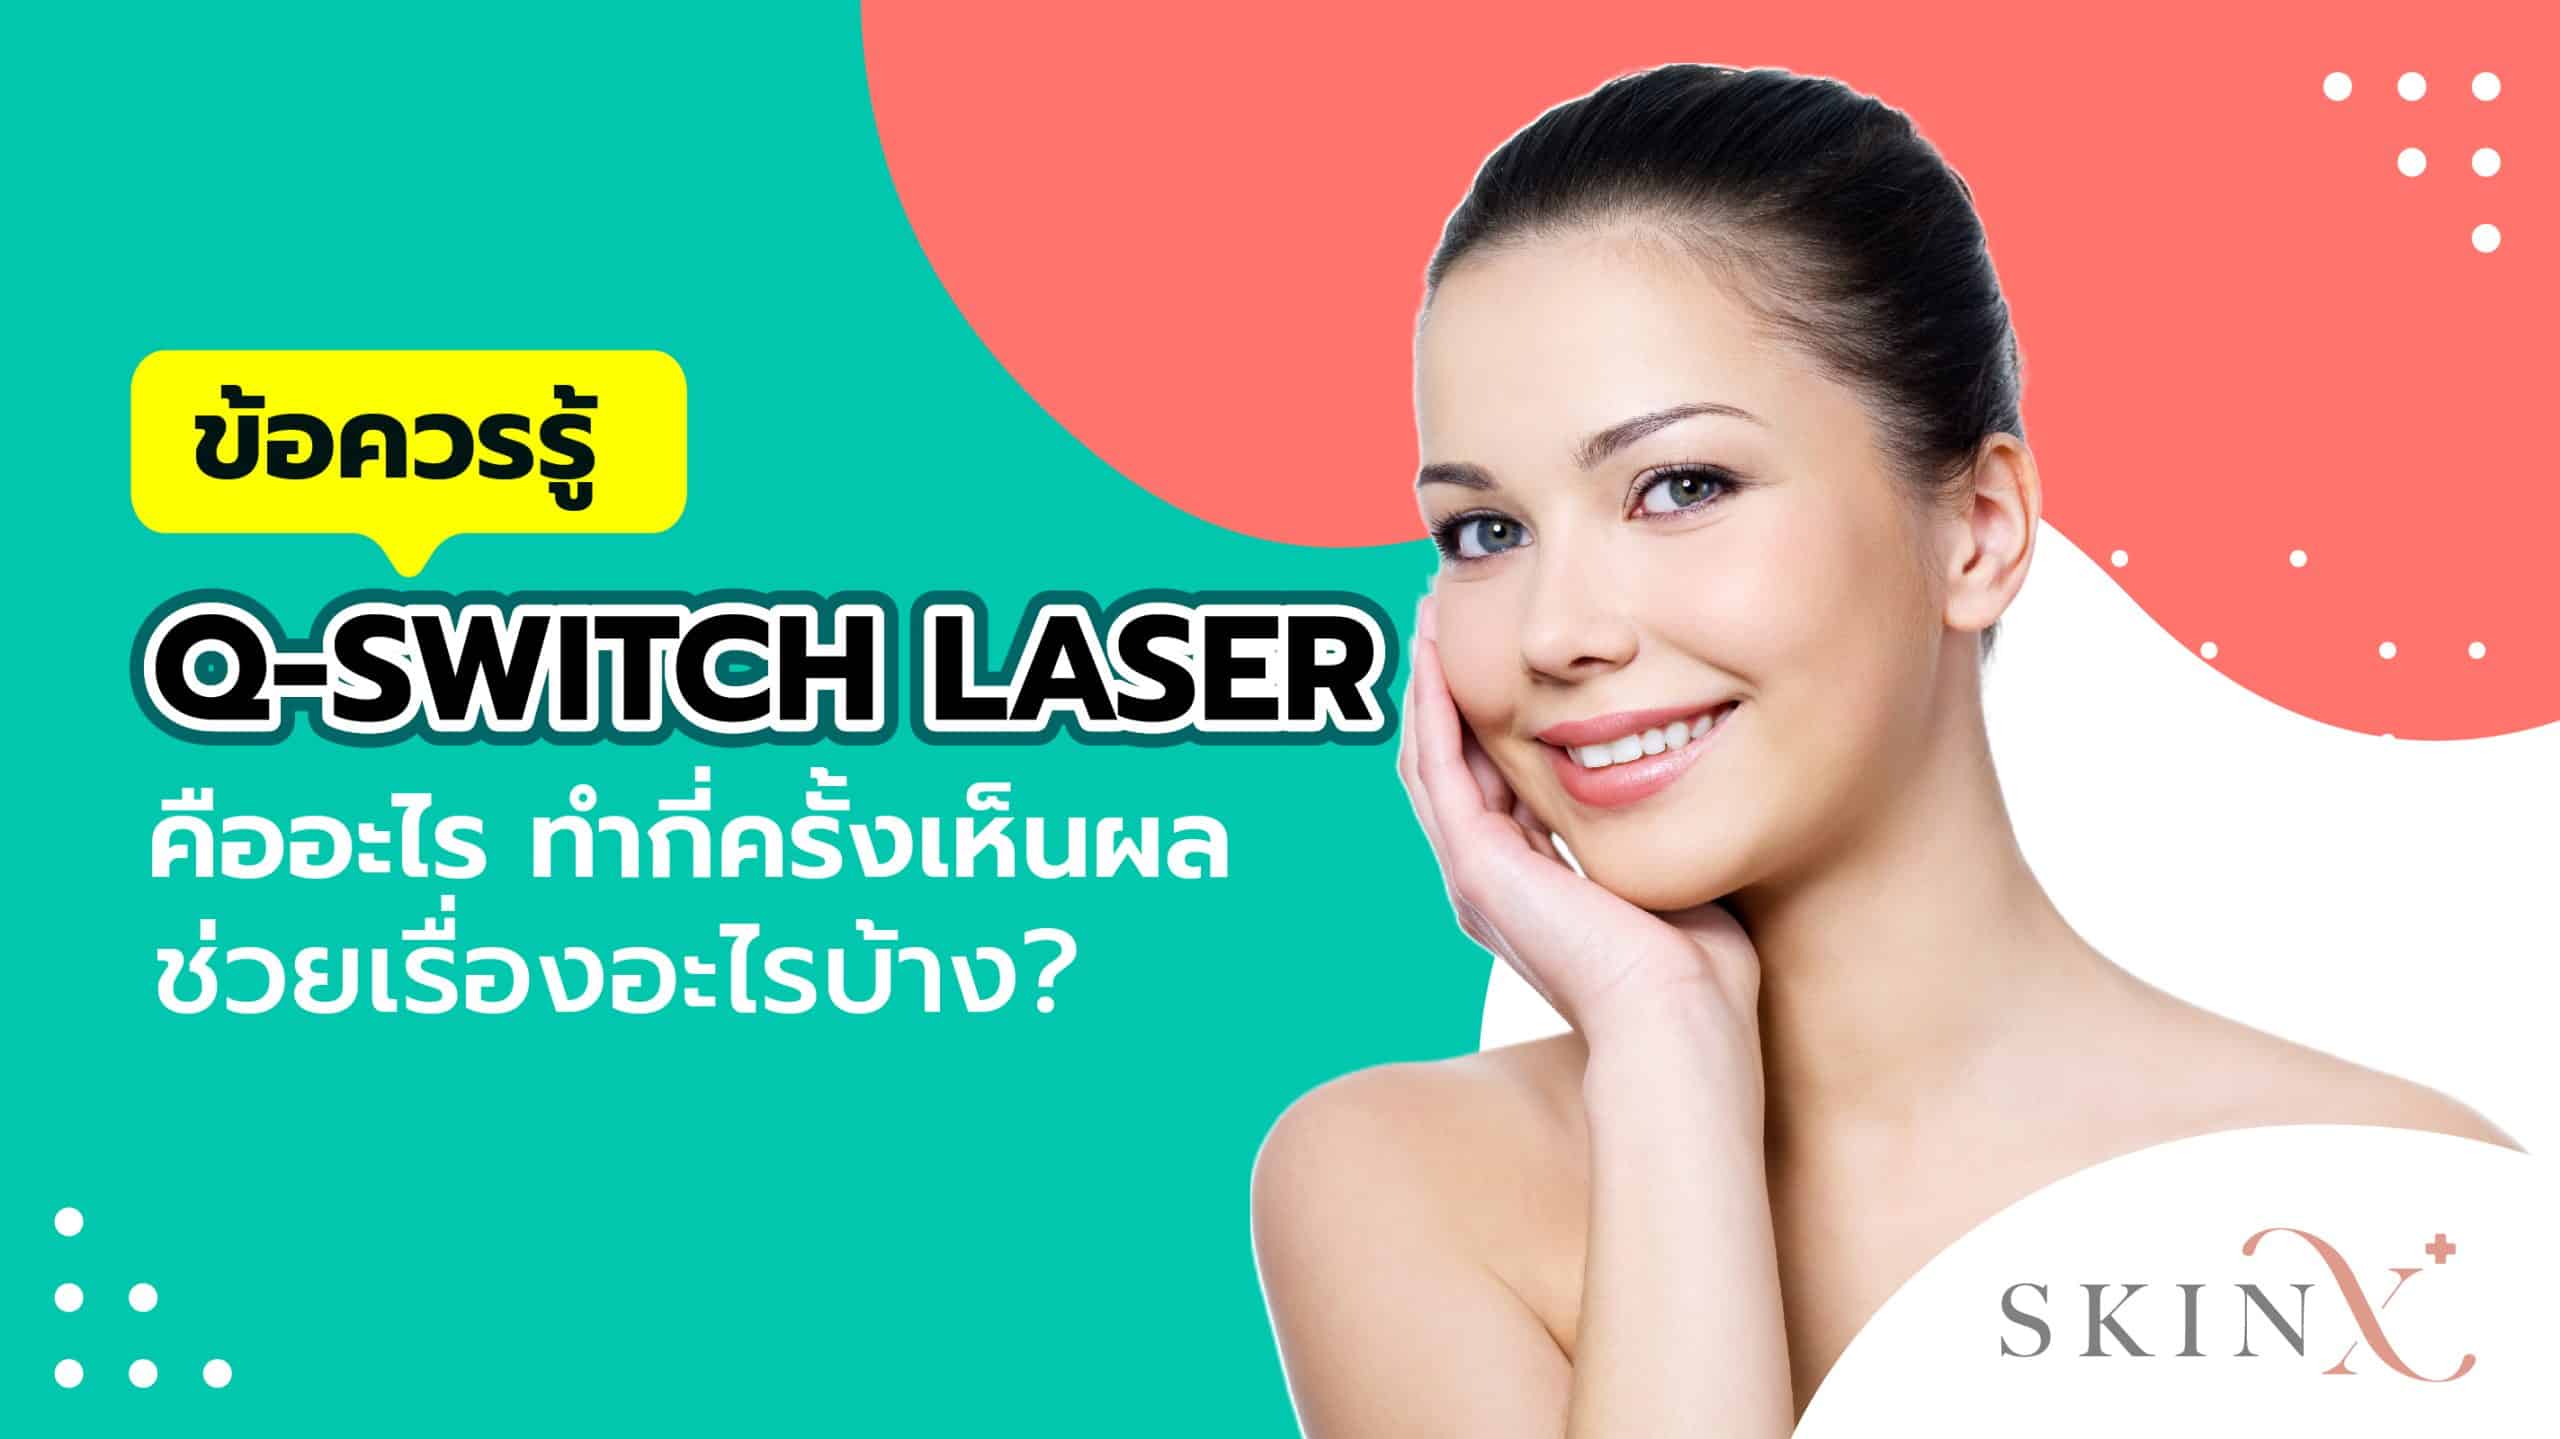 Q-Switch-laser